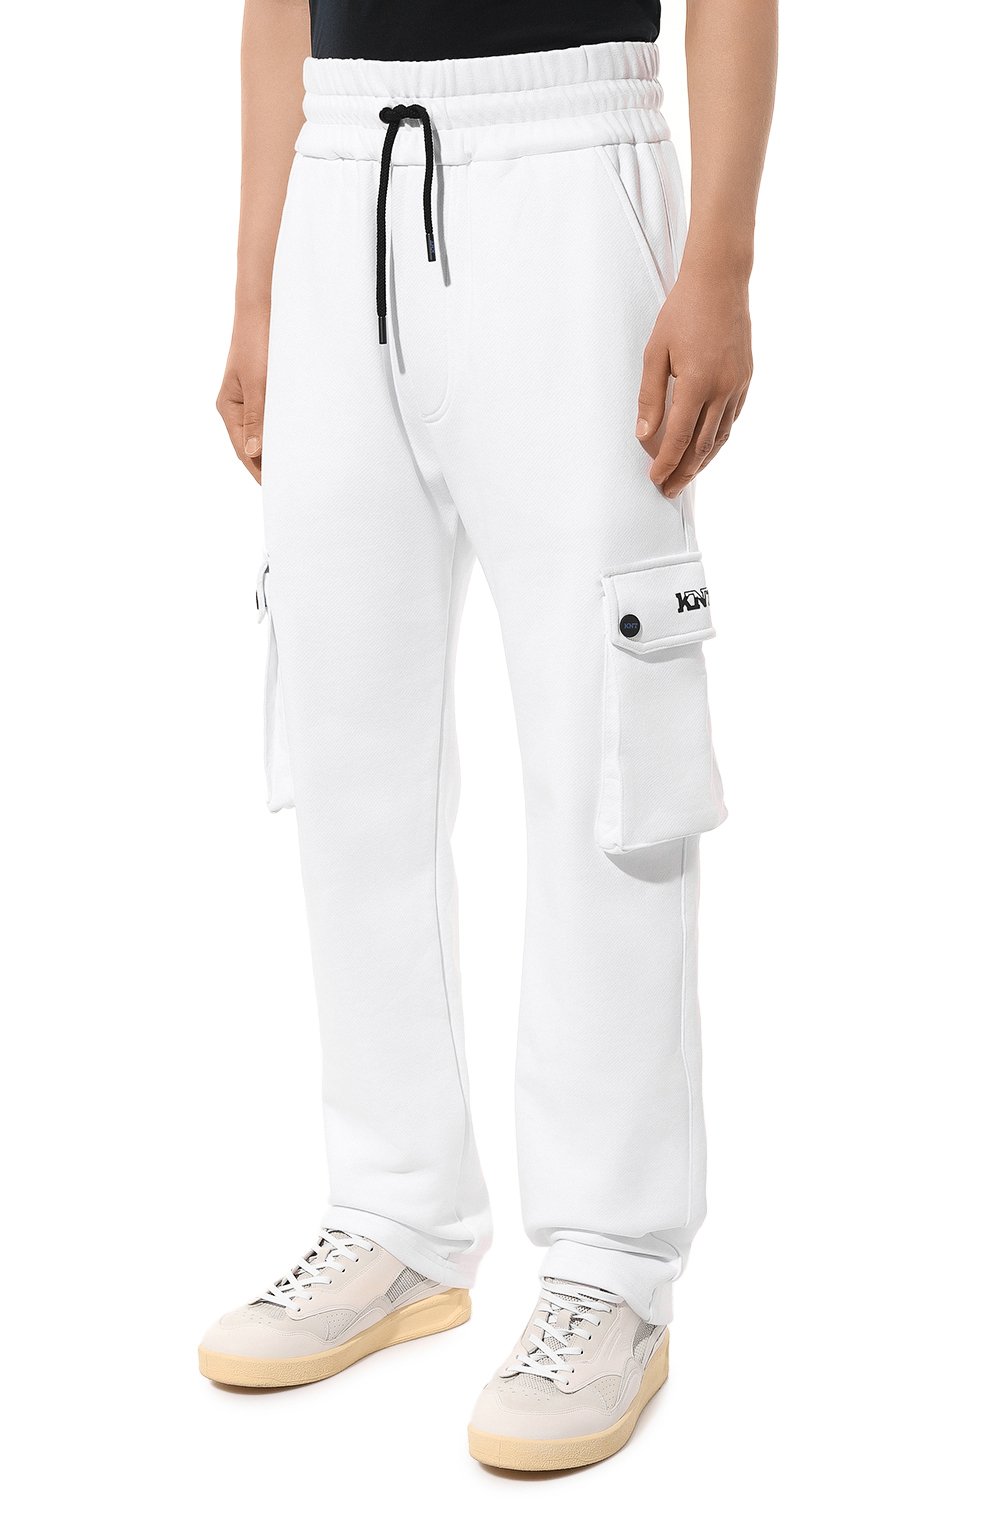 Мужские белые хлопковые брюки-карго KNT купить в интернет-магазине ЦУМ,арт. UMM0449